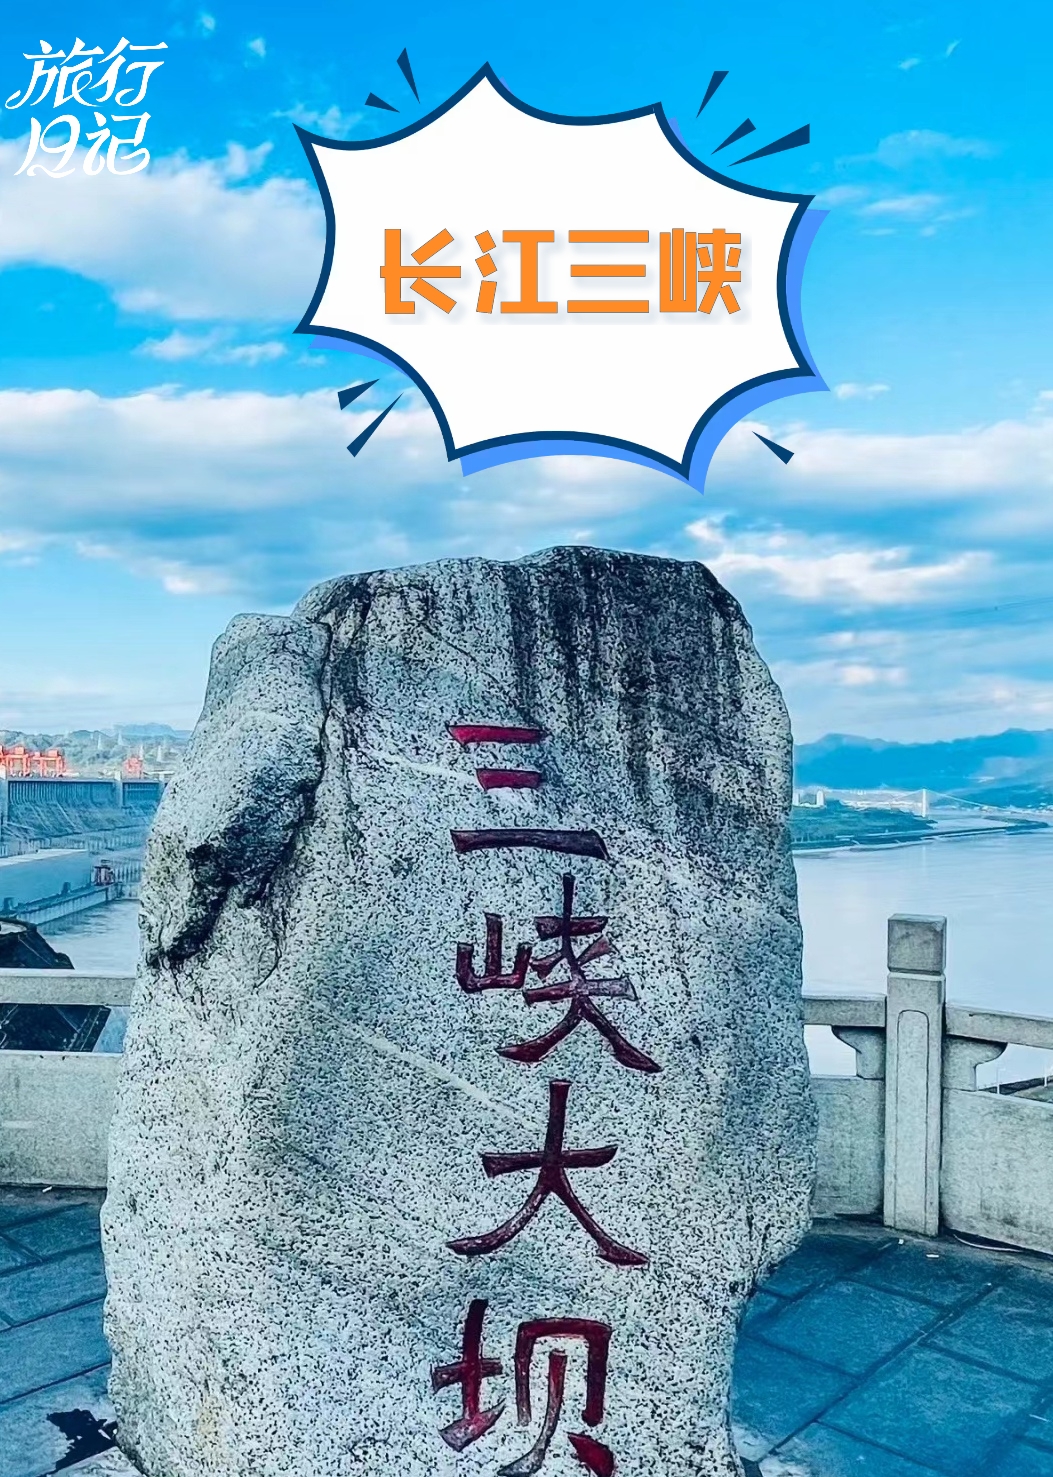 自然壮美与人类智慧的奇迹-长江三峡